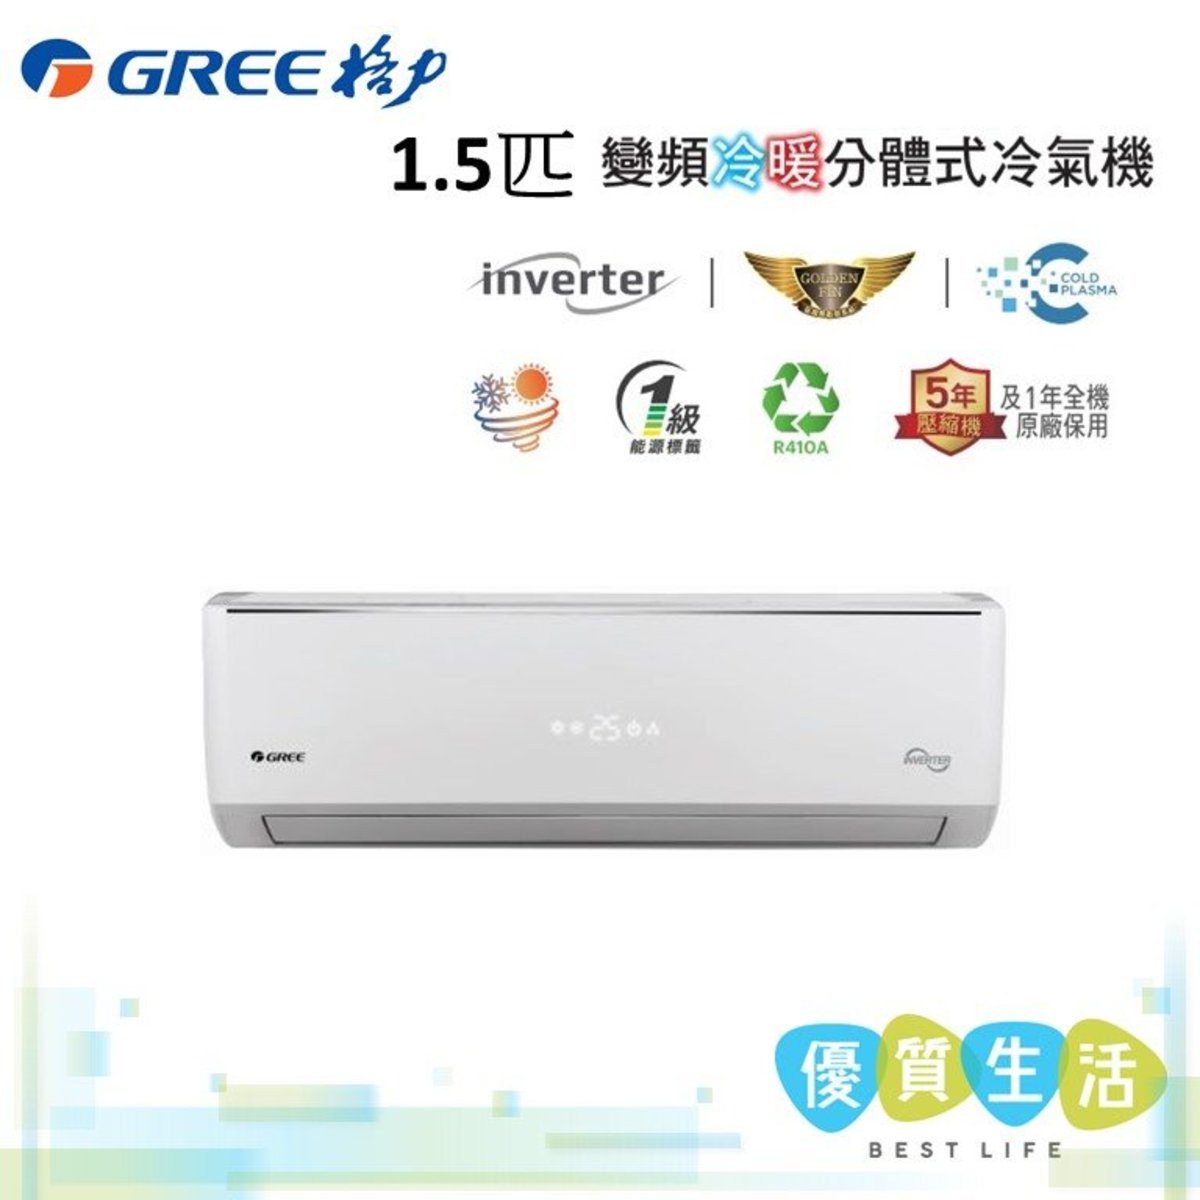 格力| Gim12A 1.5匹變頻式分體空調(冷暖型/迷你室外機) | Hktvmall 香港最大網購平台